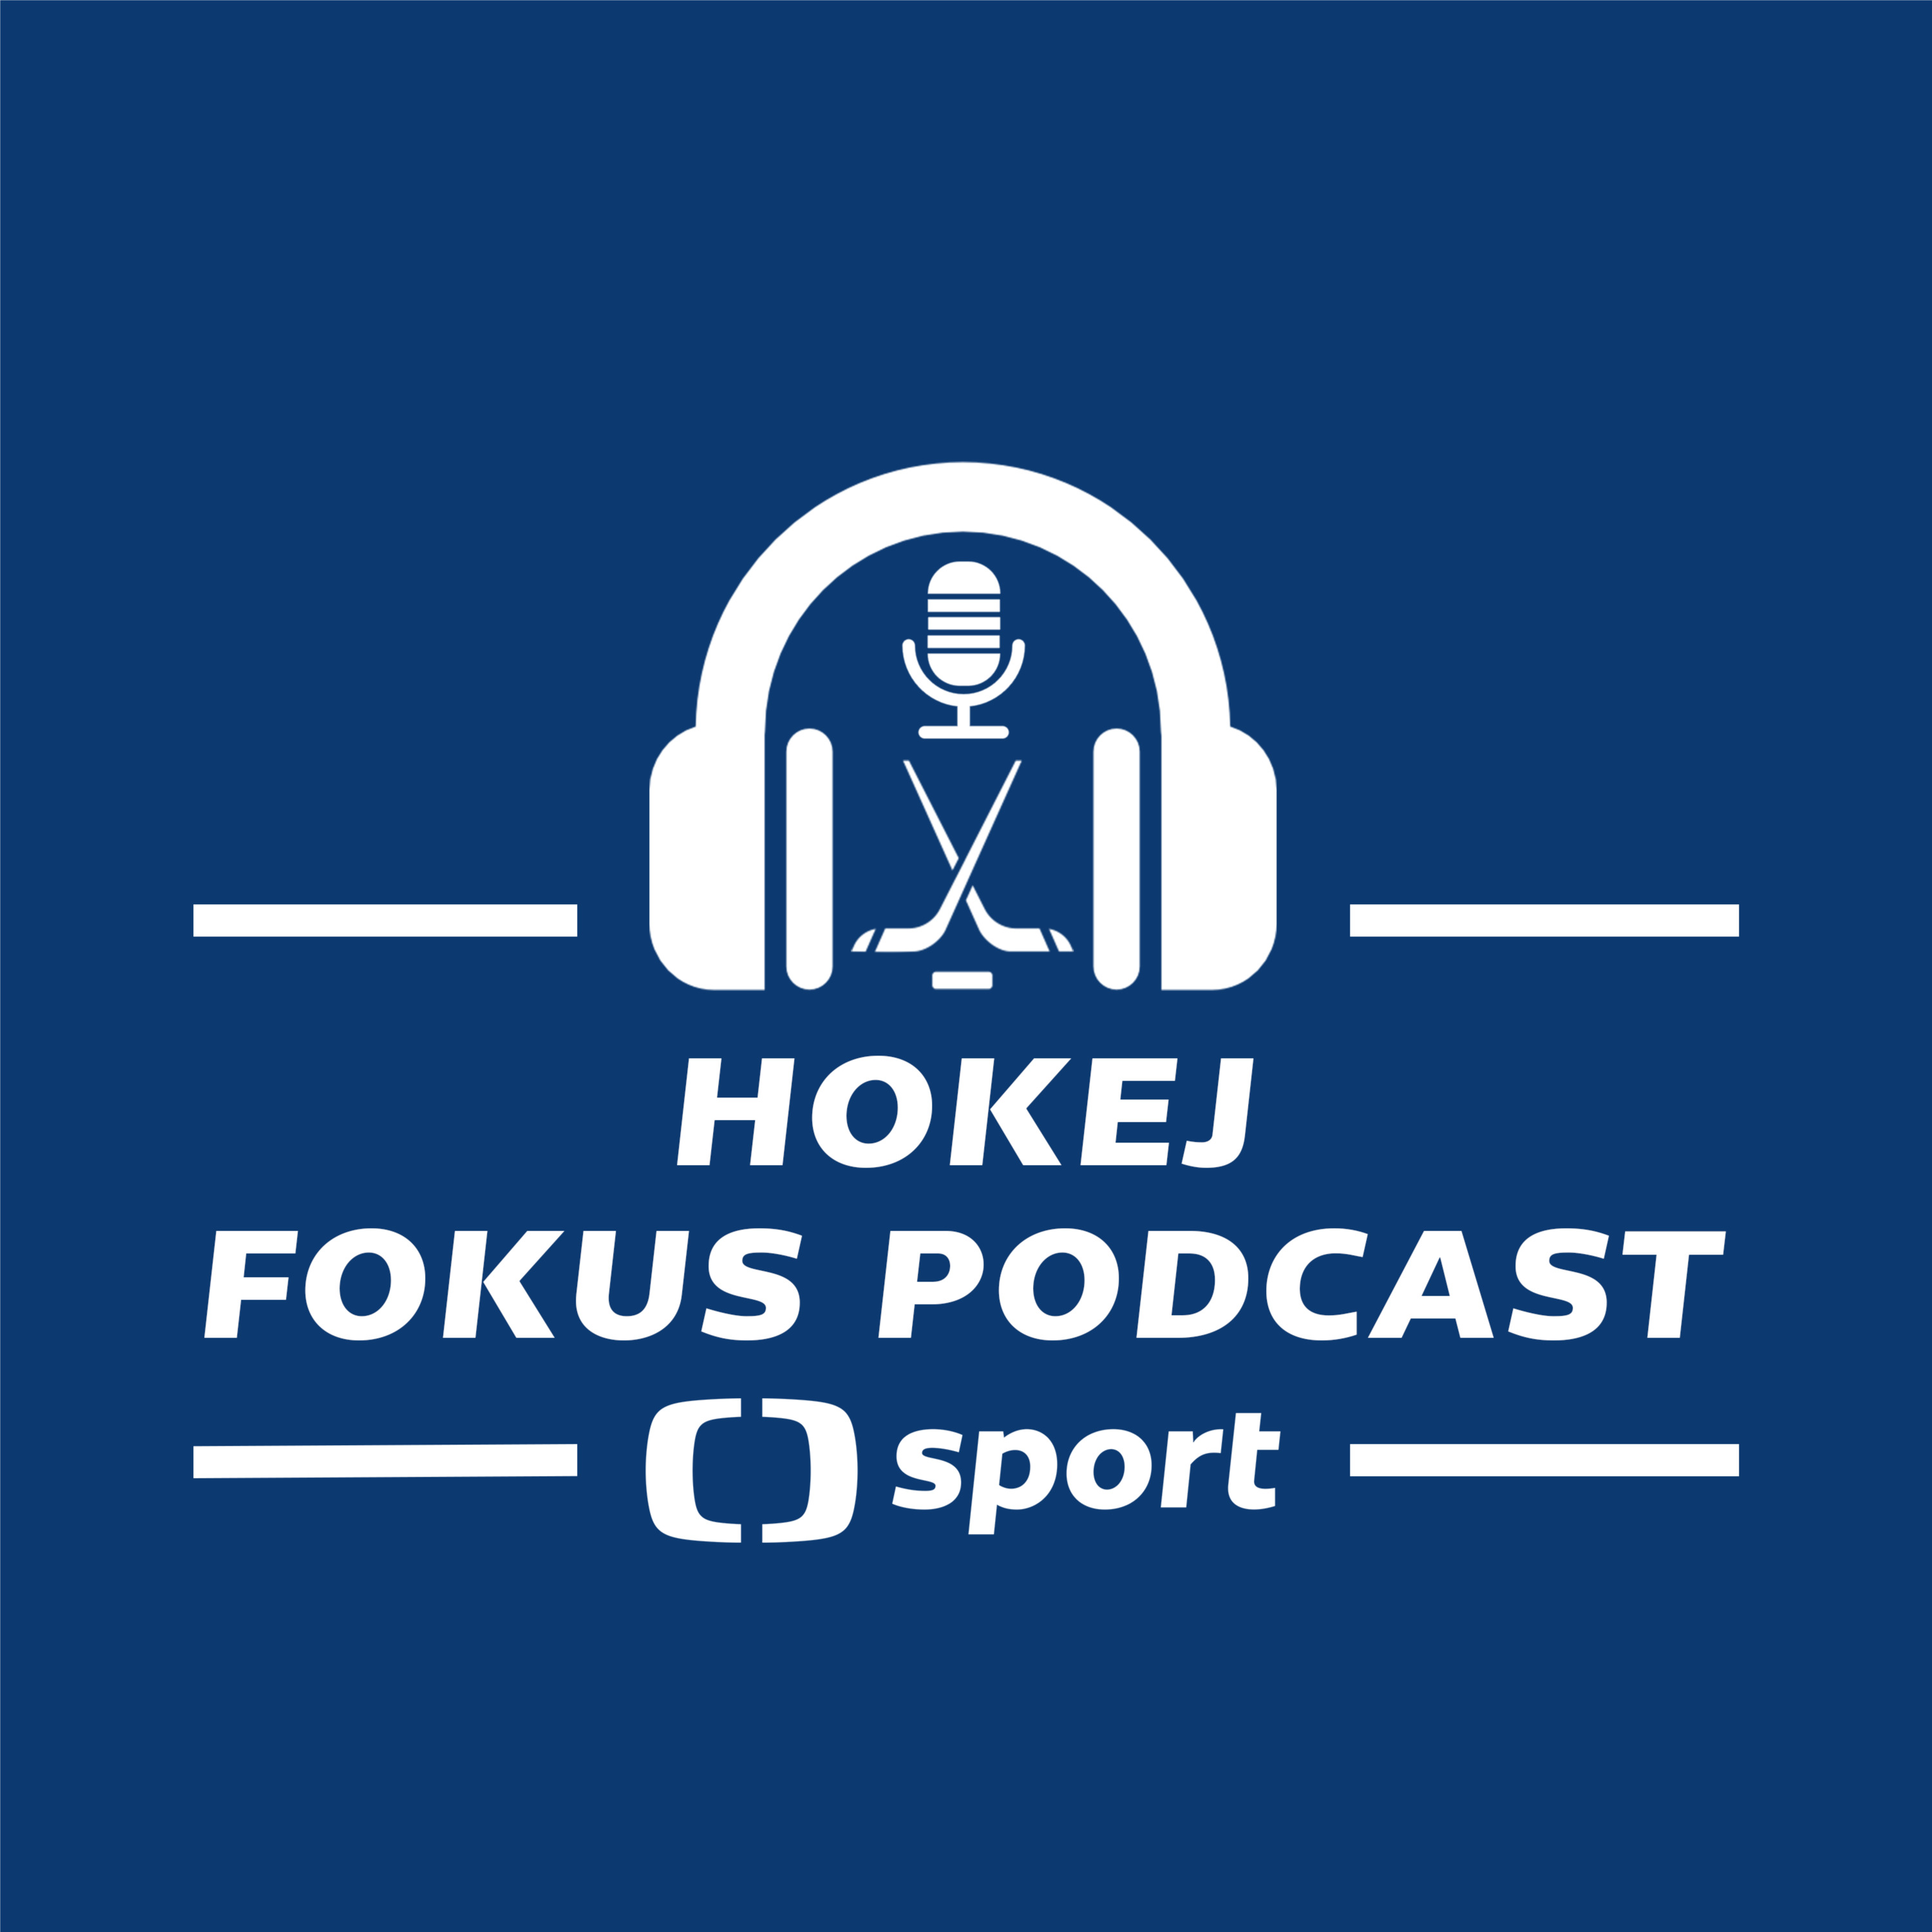 Hokej fokus podcast: Finská vize u reprezentace s Jalonenem a predikce předkola play-off